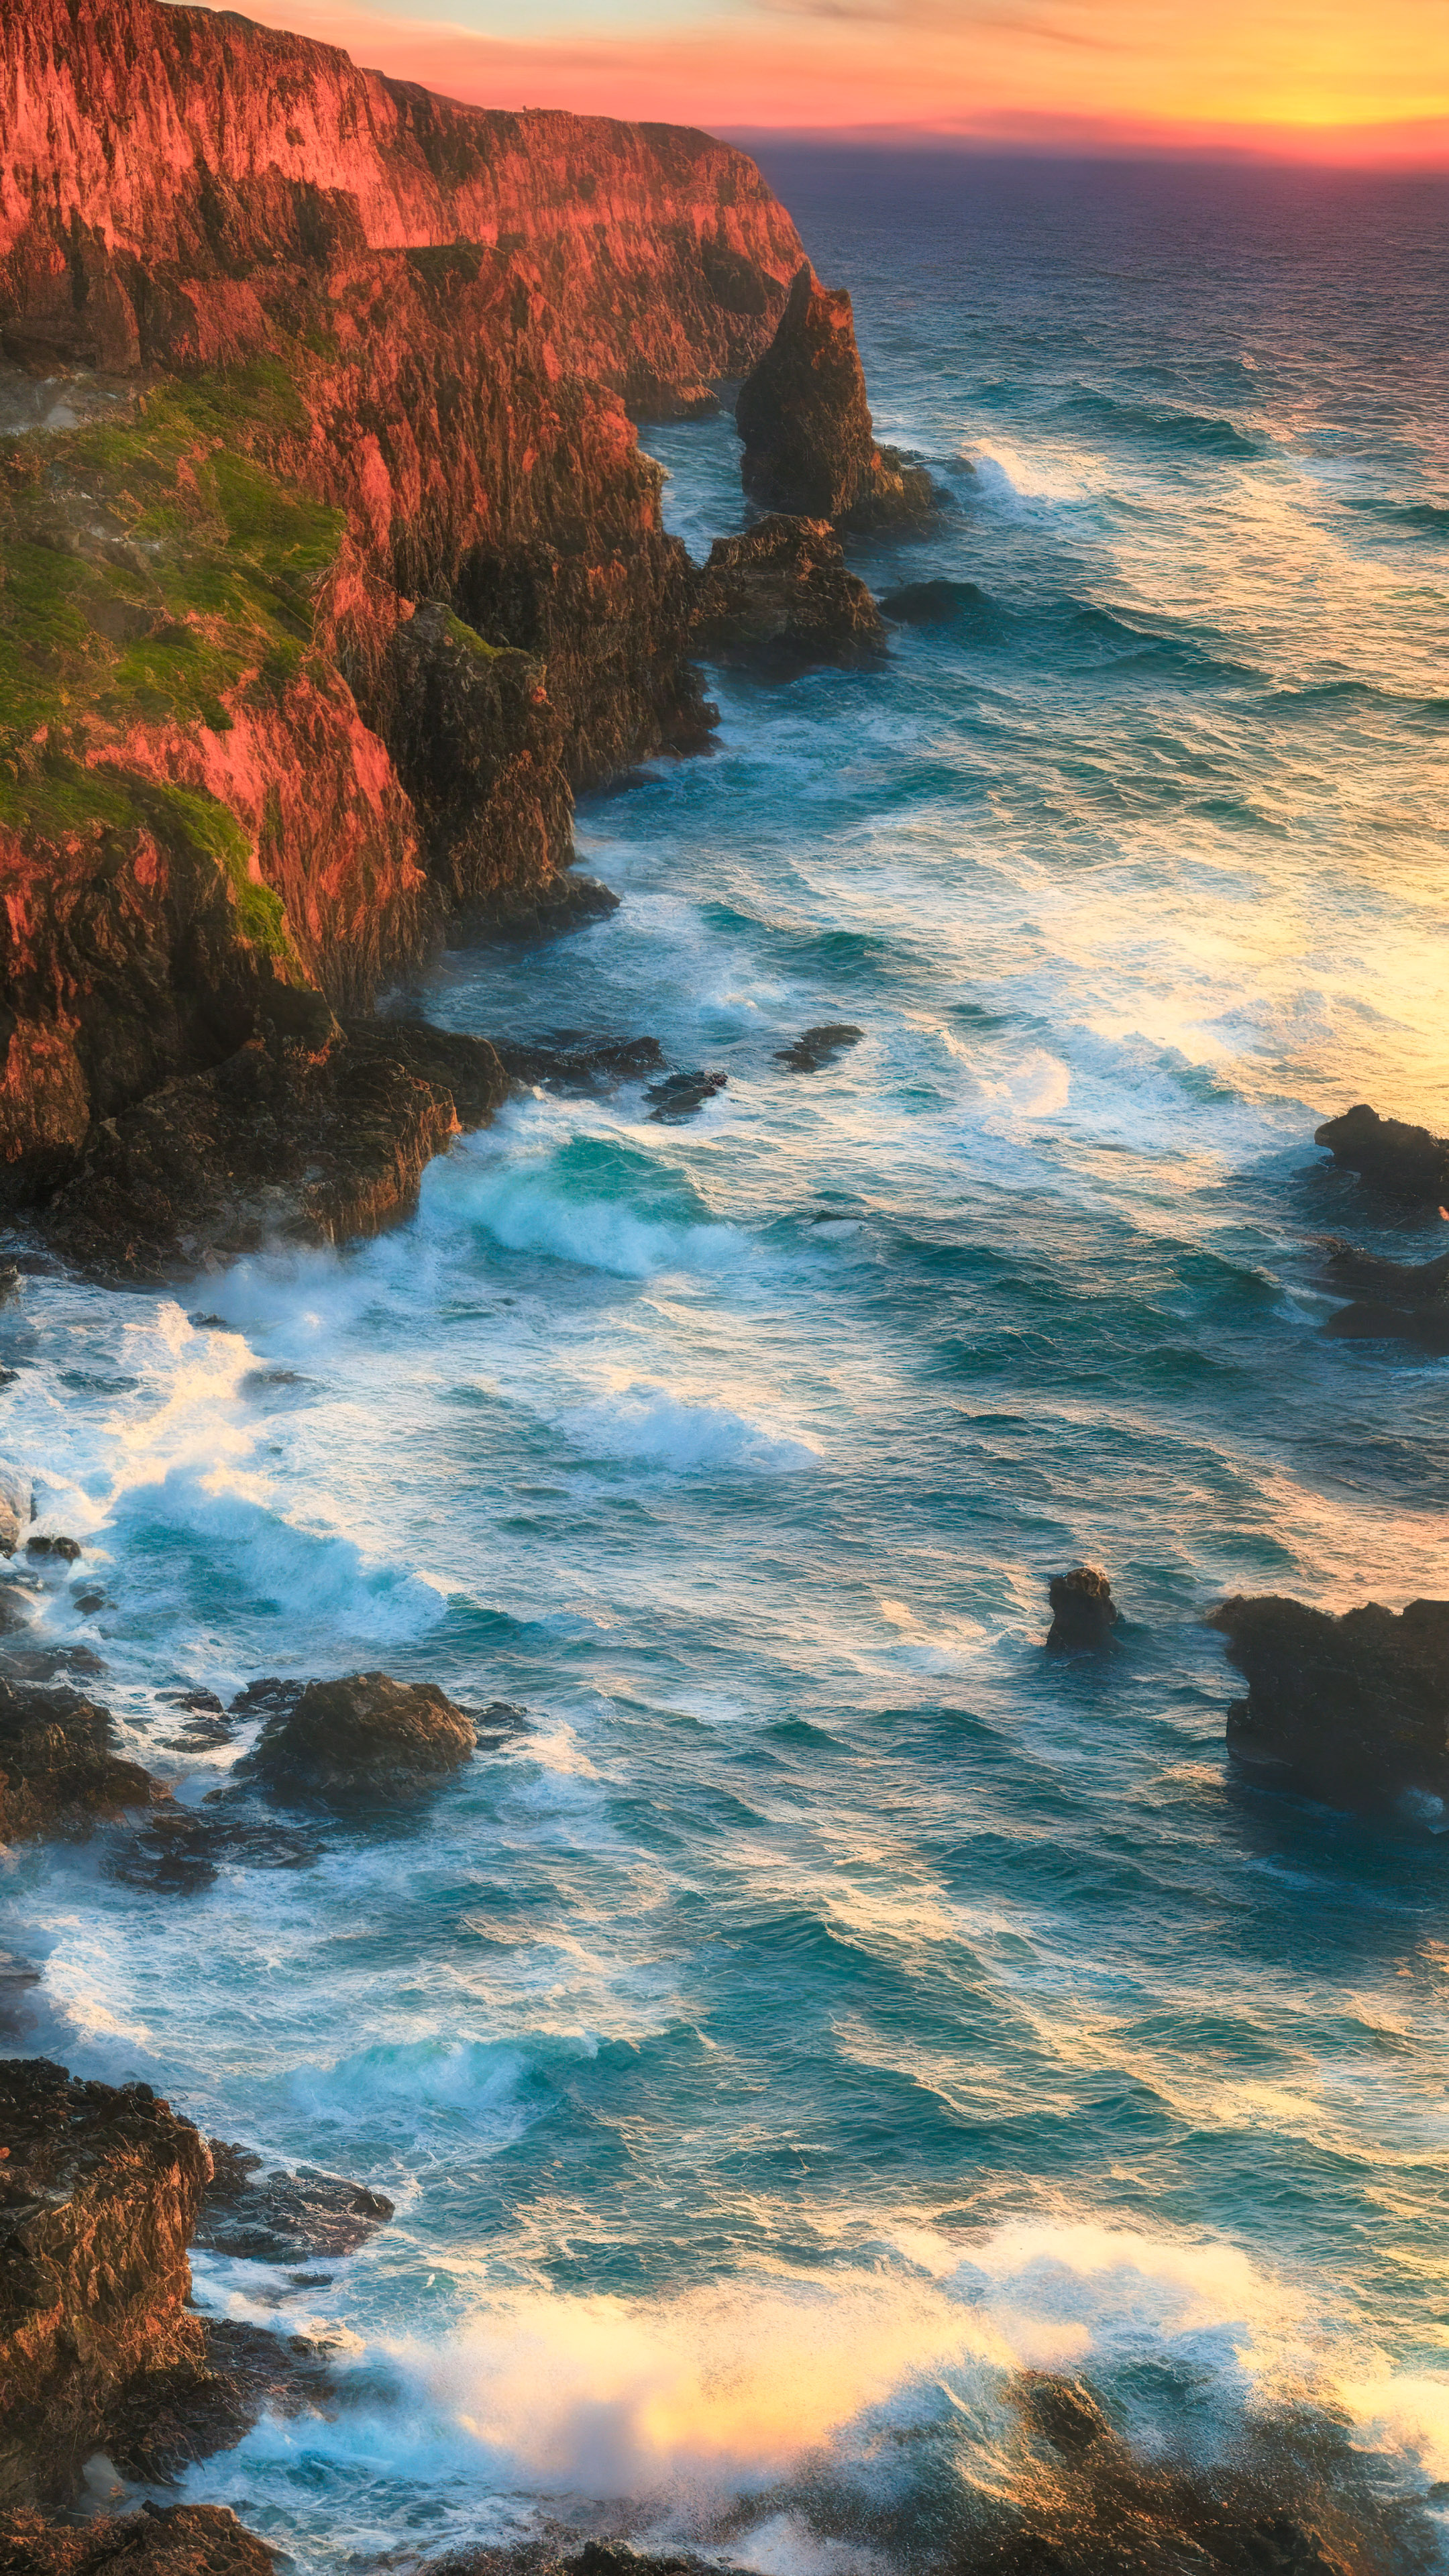 Une vue côtière époustouflante se dévoile dans notre beau paysage en 4K, où des falaises rugueuses rencontrent des vagues déferlantes sous un coucher de soleil enflammé.